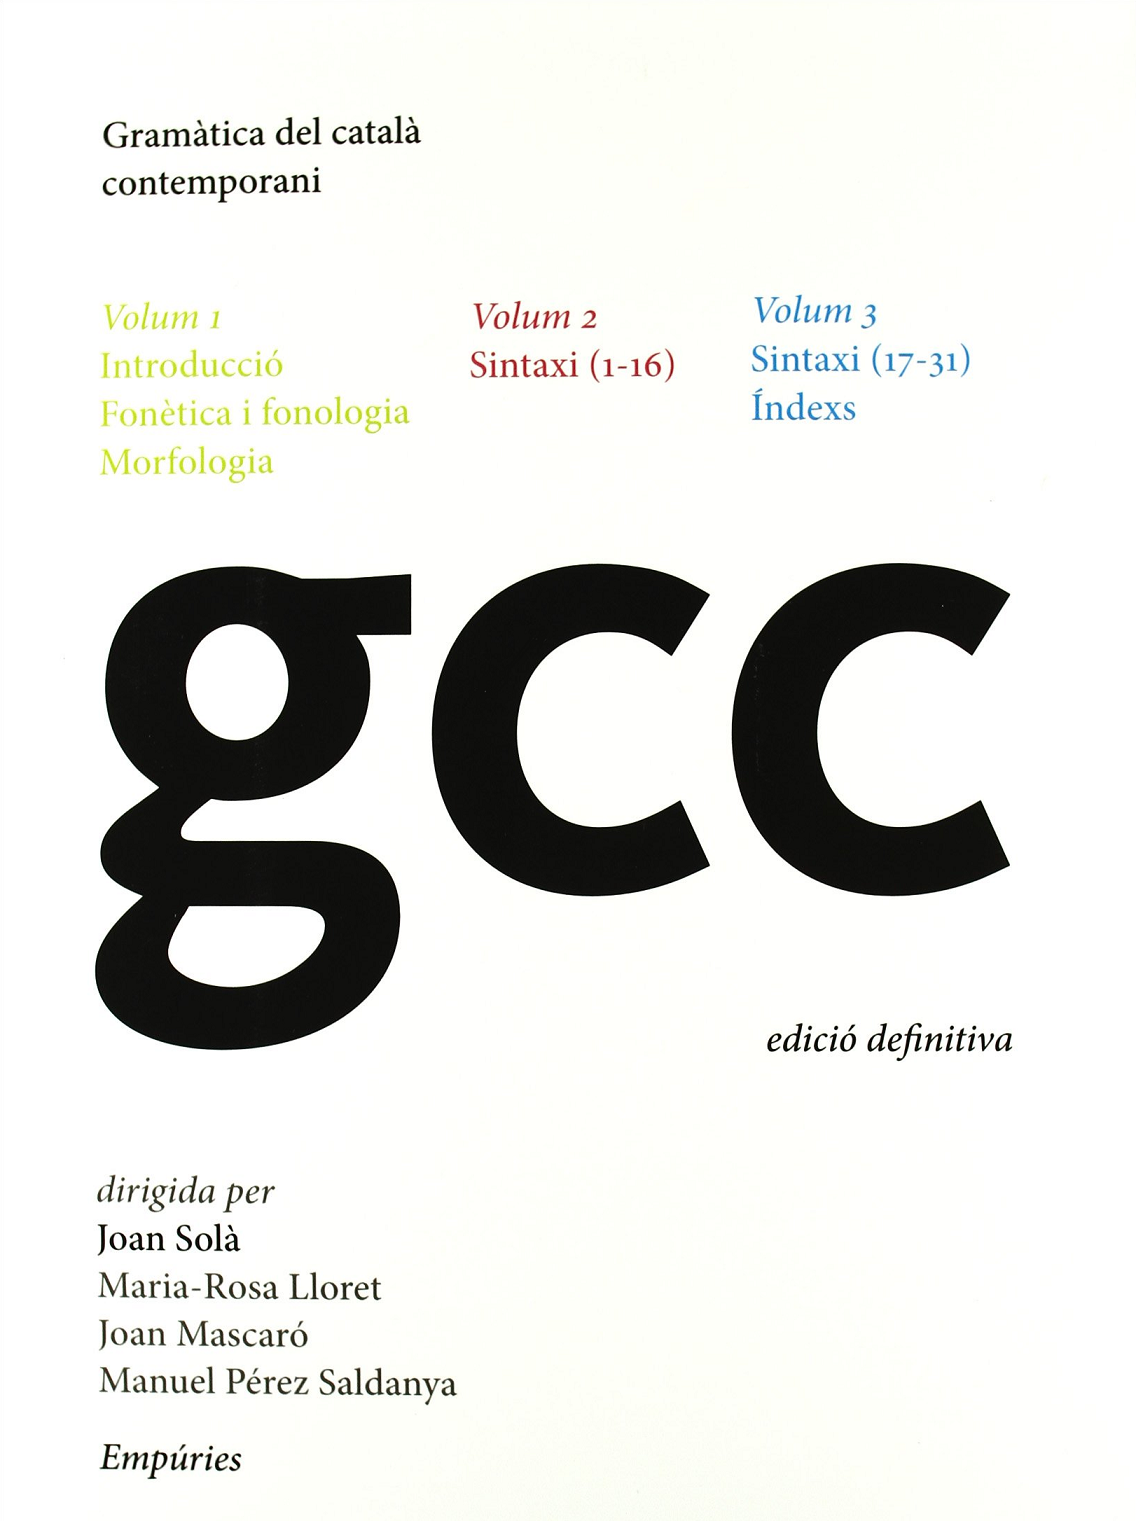 Imagen de portada del libro Gramàtica del català contemporani